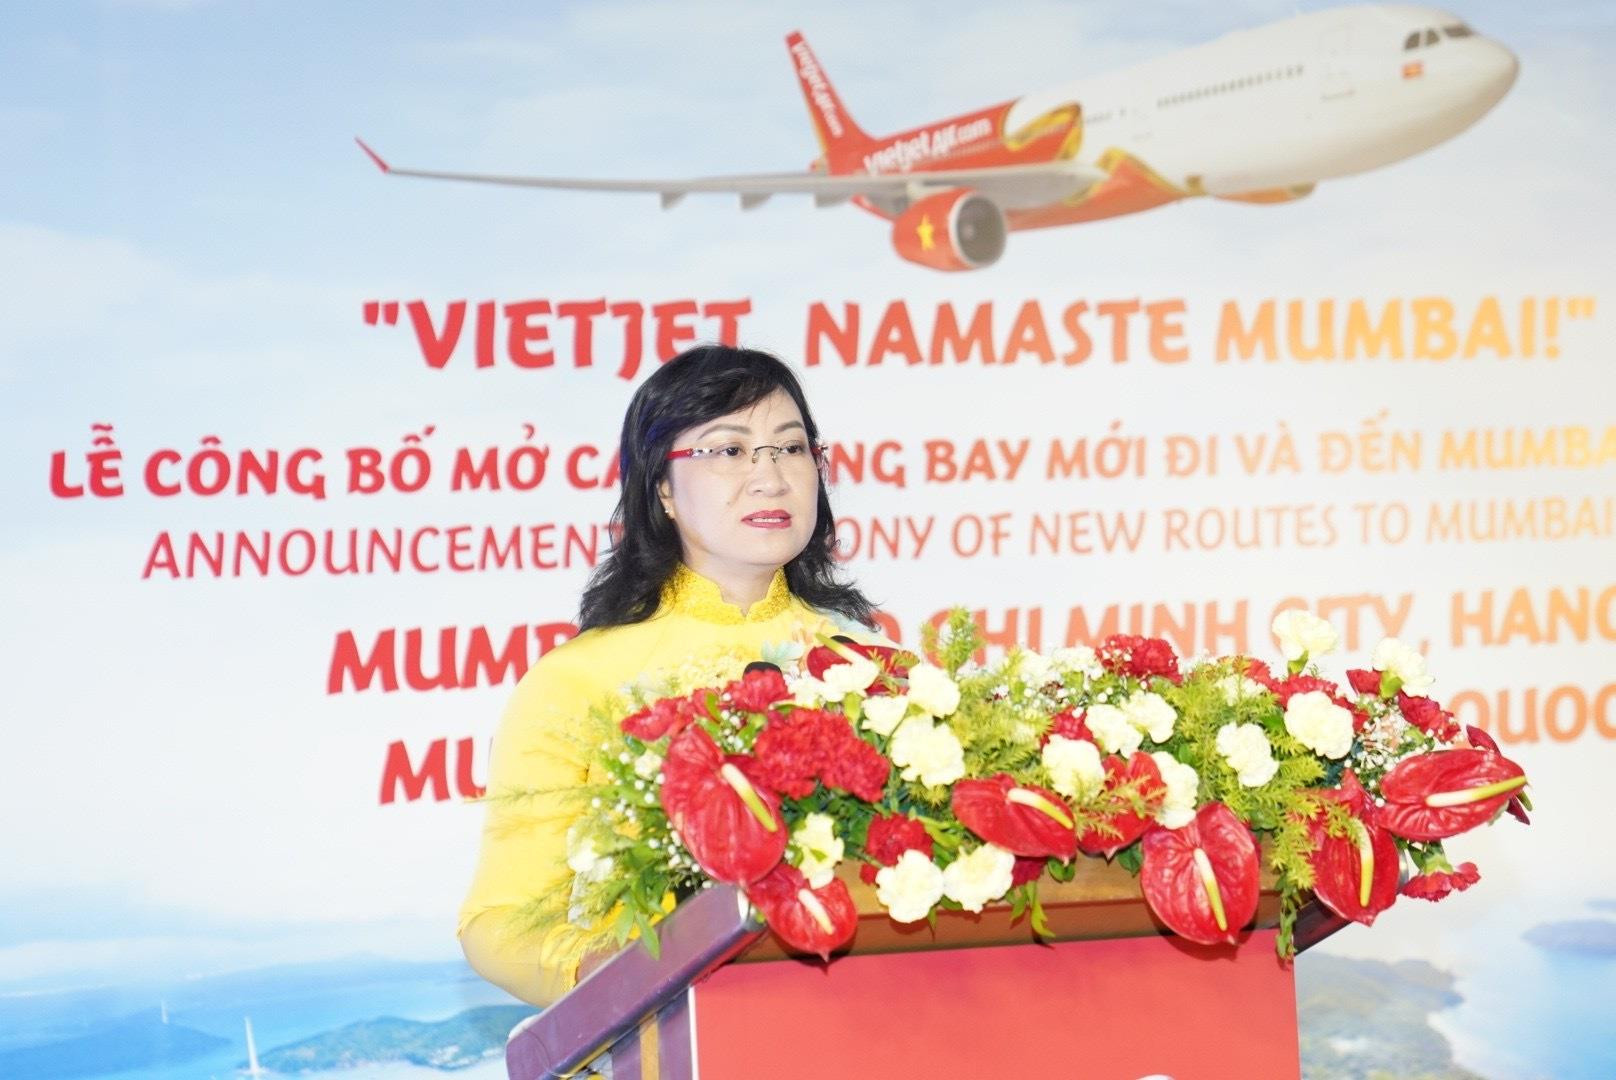 Vietjet mở đường bay TP.HCM/Hà Nội - Mumbai cùng các đường bay Việt Nam - Ấn Độ - 2